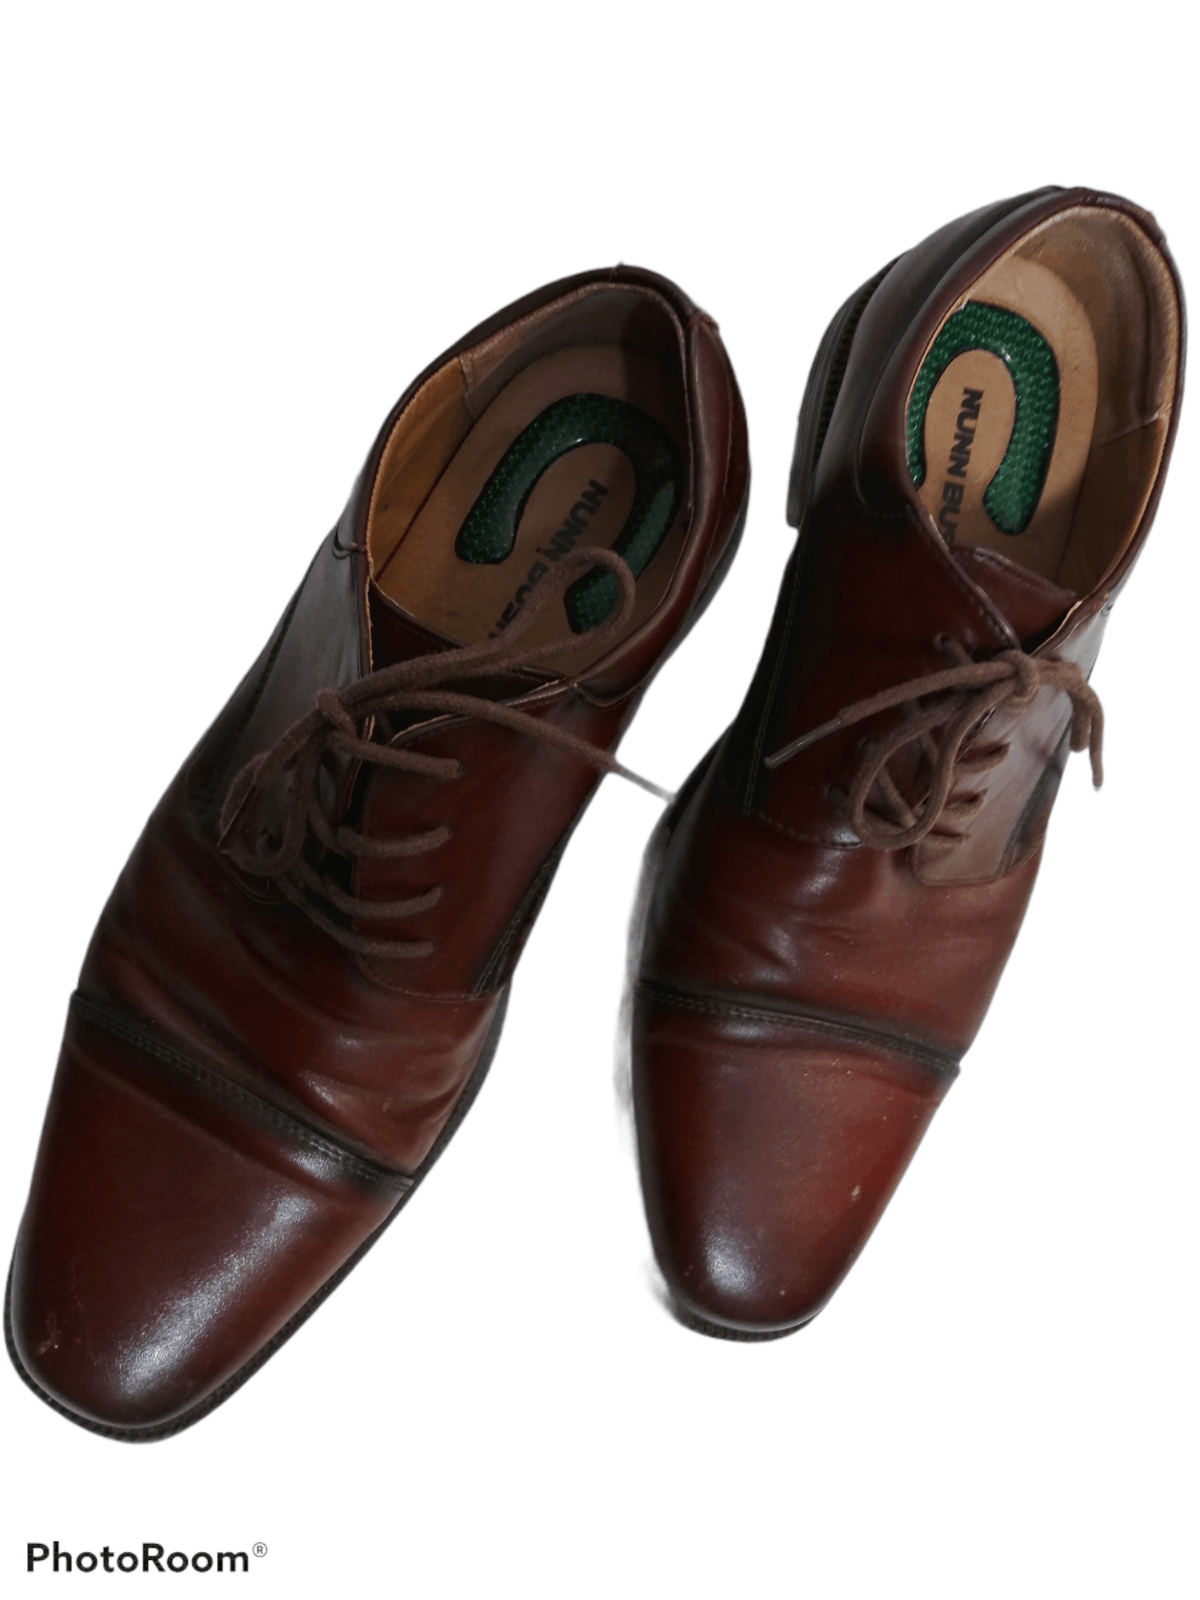 Nunn Bush Nunn Bush Men's Oxford Leather Dress Shoes Brown Size US 9 / EU 42 - 3 Thumbnail